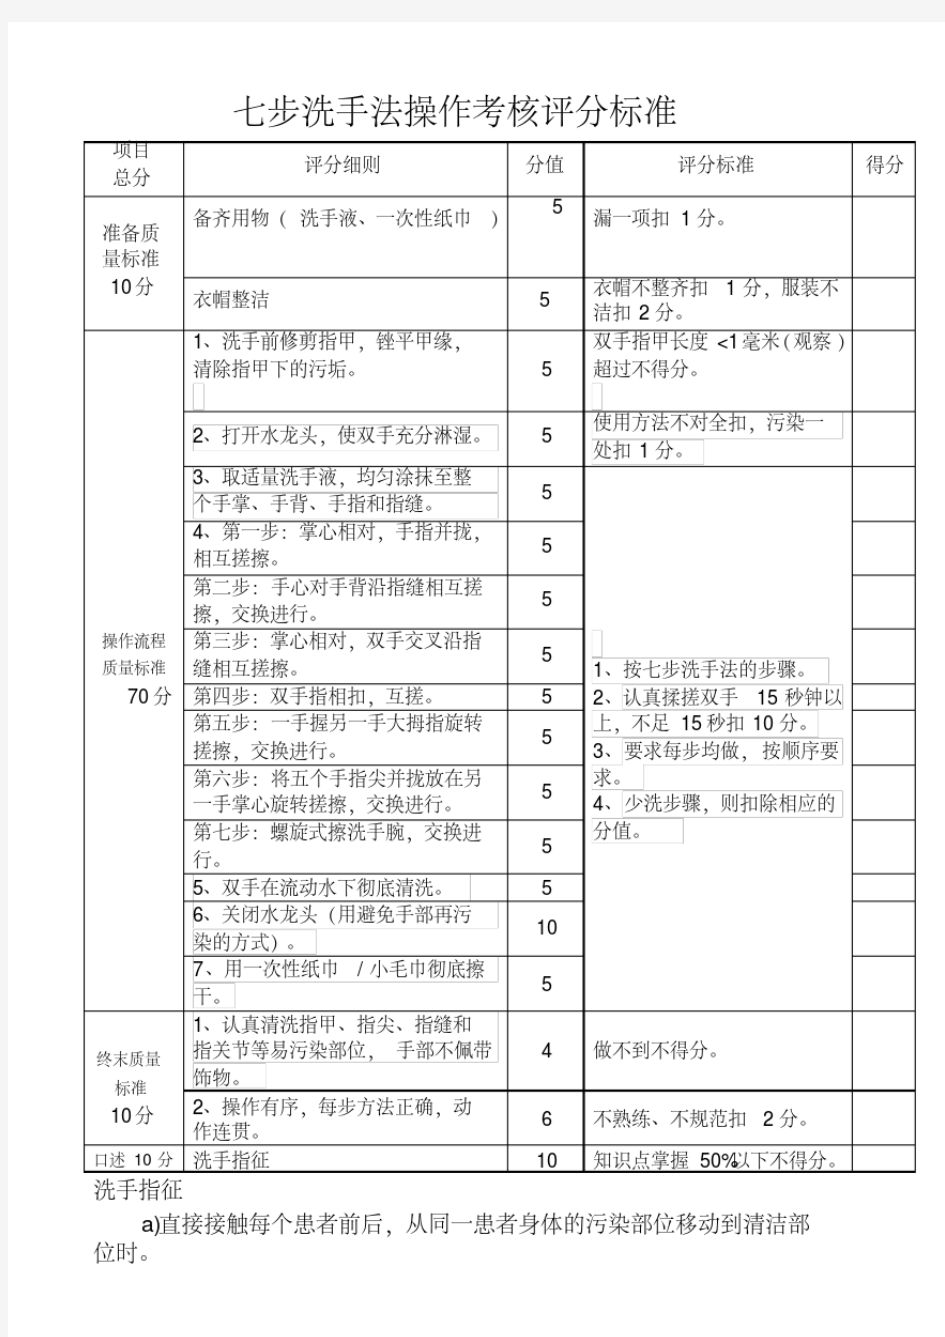 新版七步洗手法操作考核评分标准.pdf